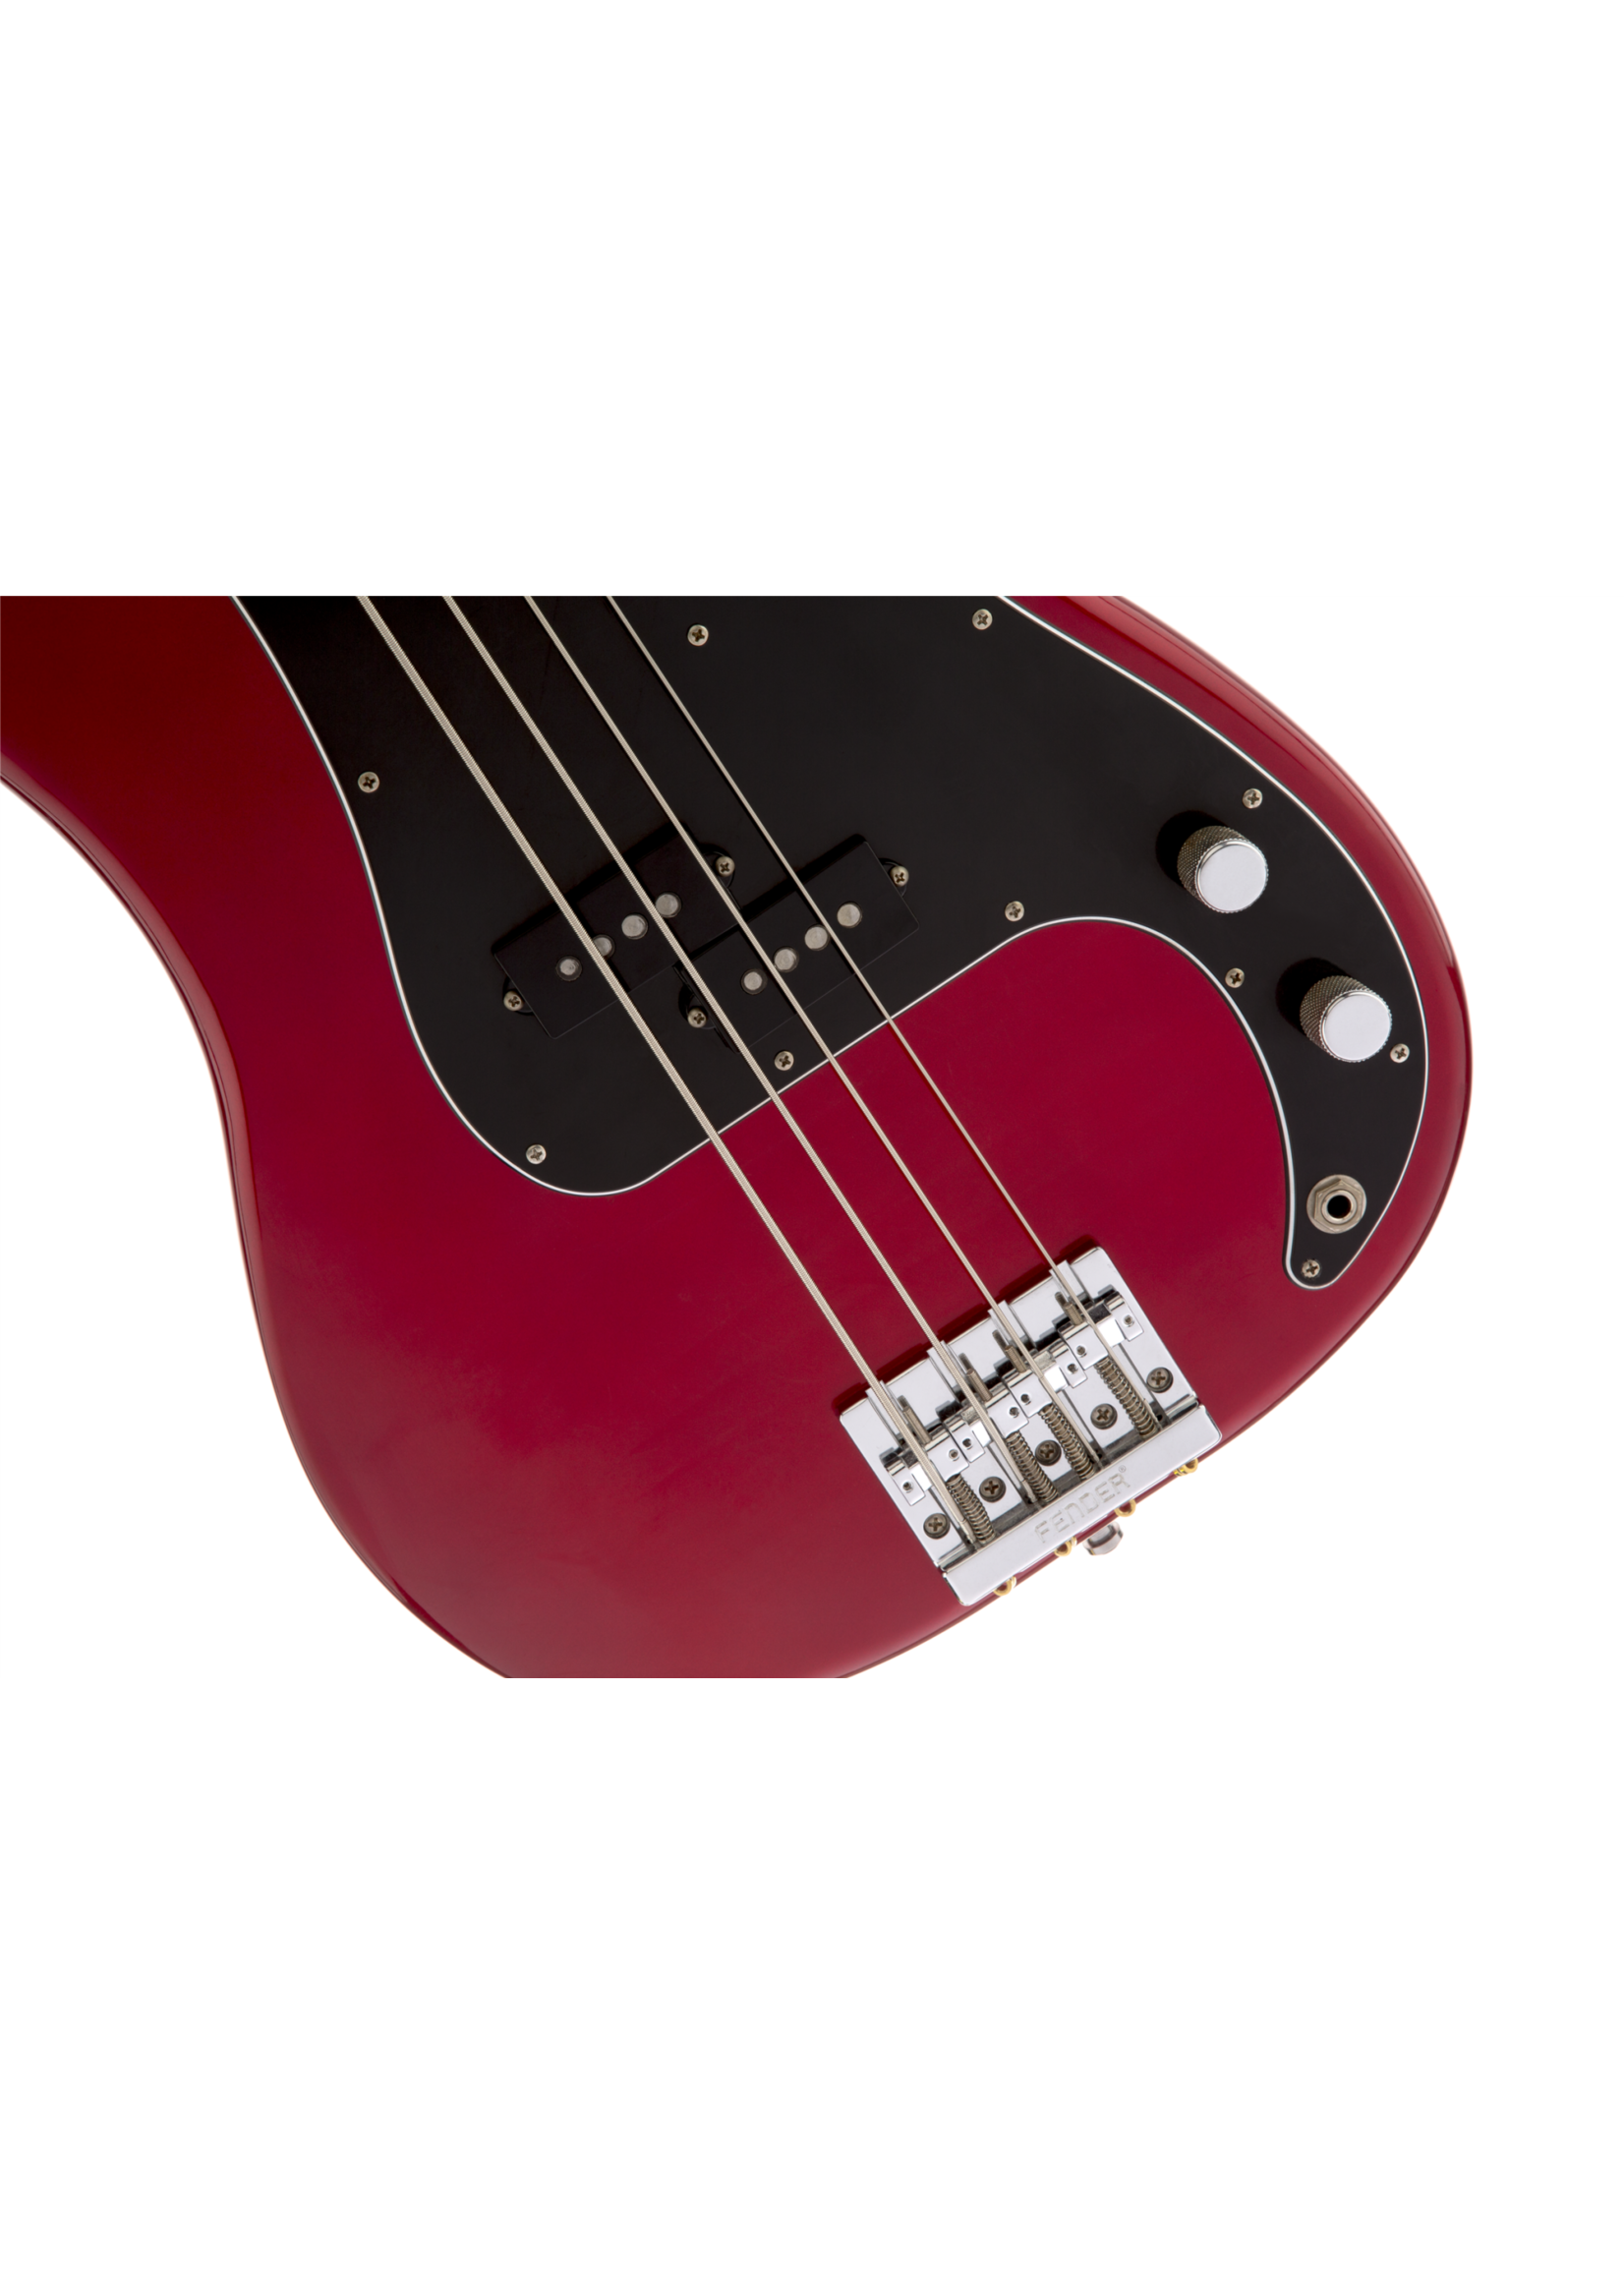 Fender Fender Nate Mendel P Bass Candy Apple Red Rosewood Fingerboard